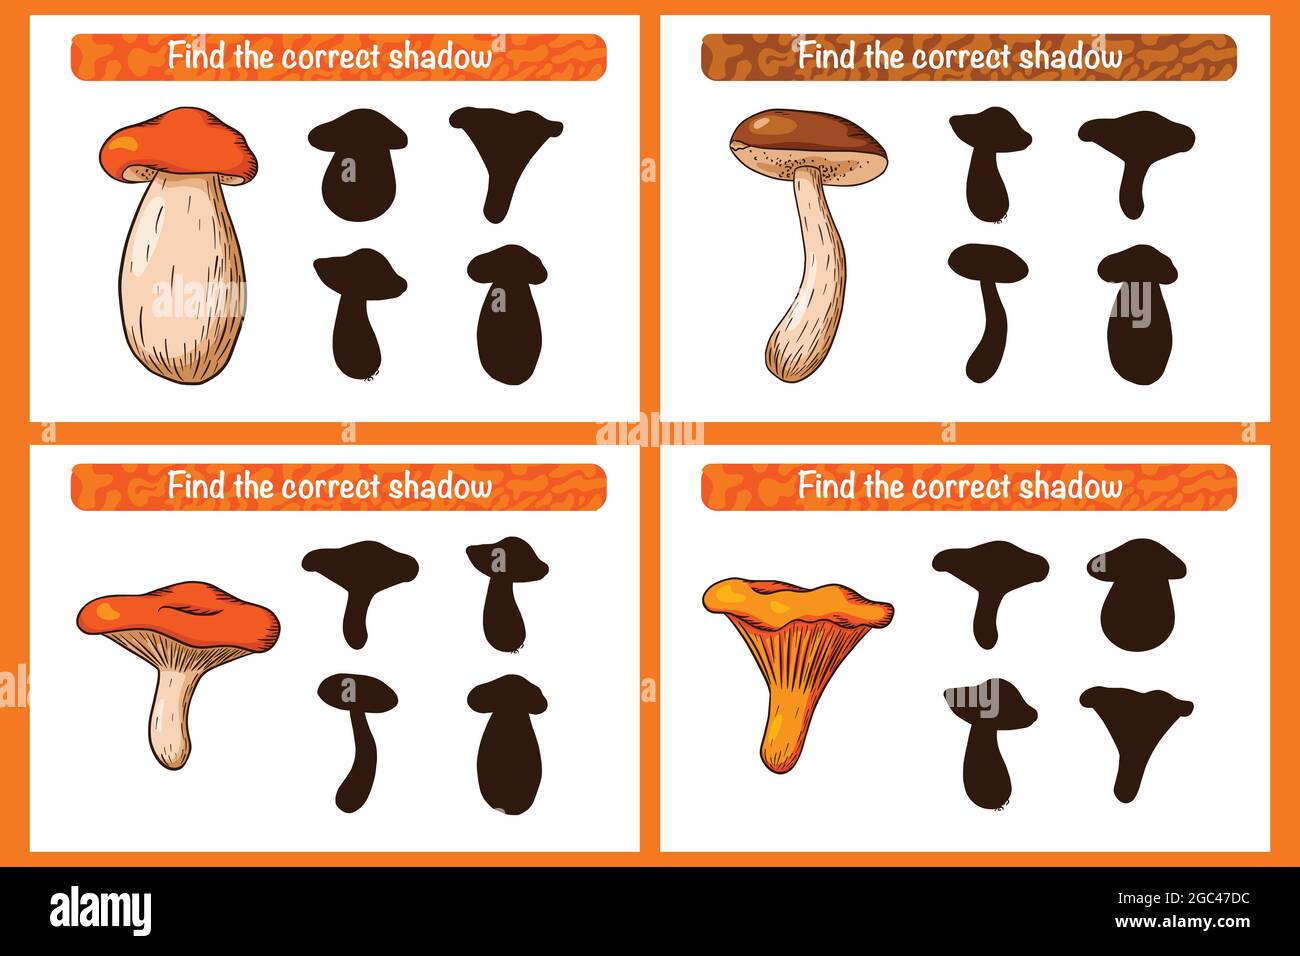 Trova il gioco educativo corretto di Mushroom Shadow per i bambini. Attività di abbinamento ombra per bambini con funghi. Puzzle prescolare. Foglio di lavoro didattico. Trova il gioco di silhouette corretto con funghi commestibili. Vettore Premium Illustrazione Vettoriale